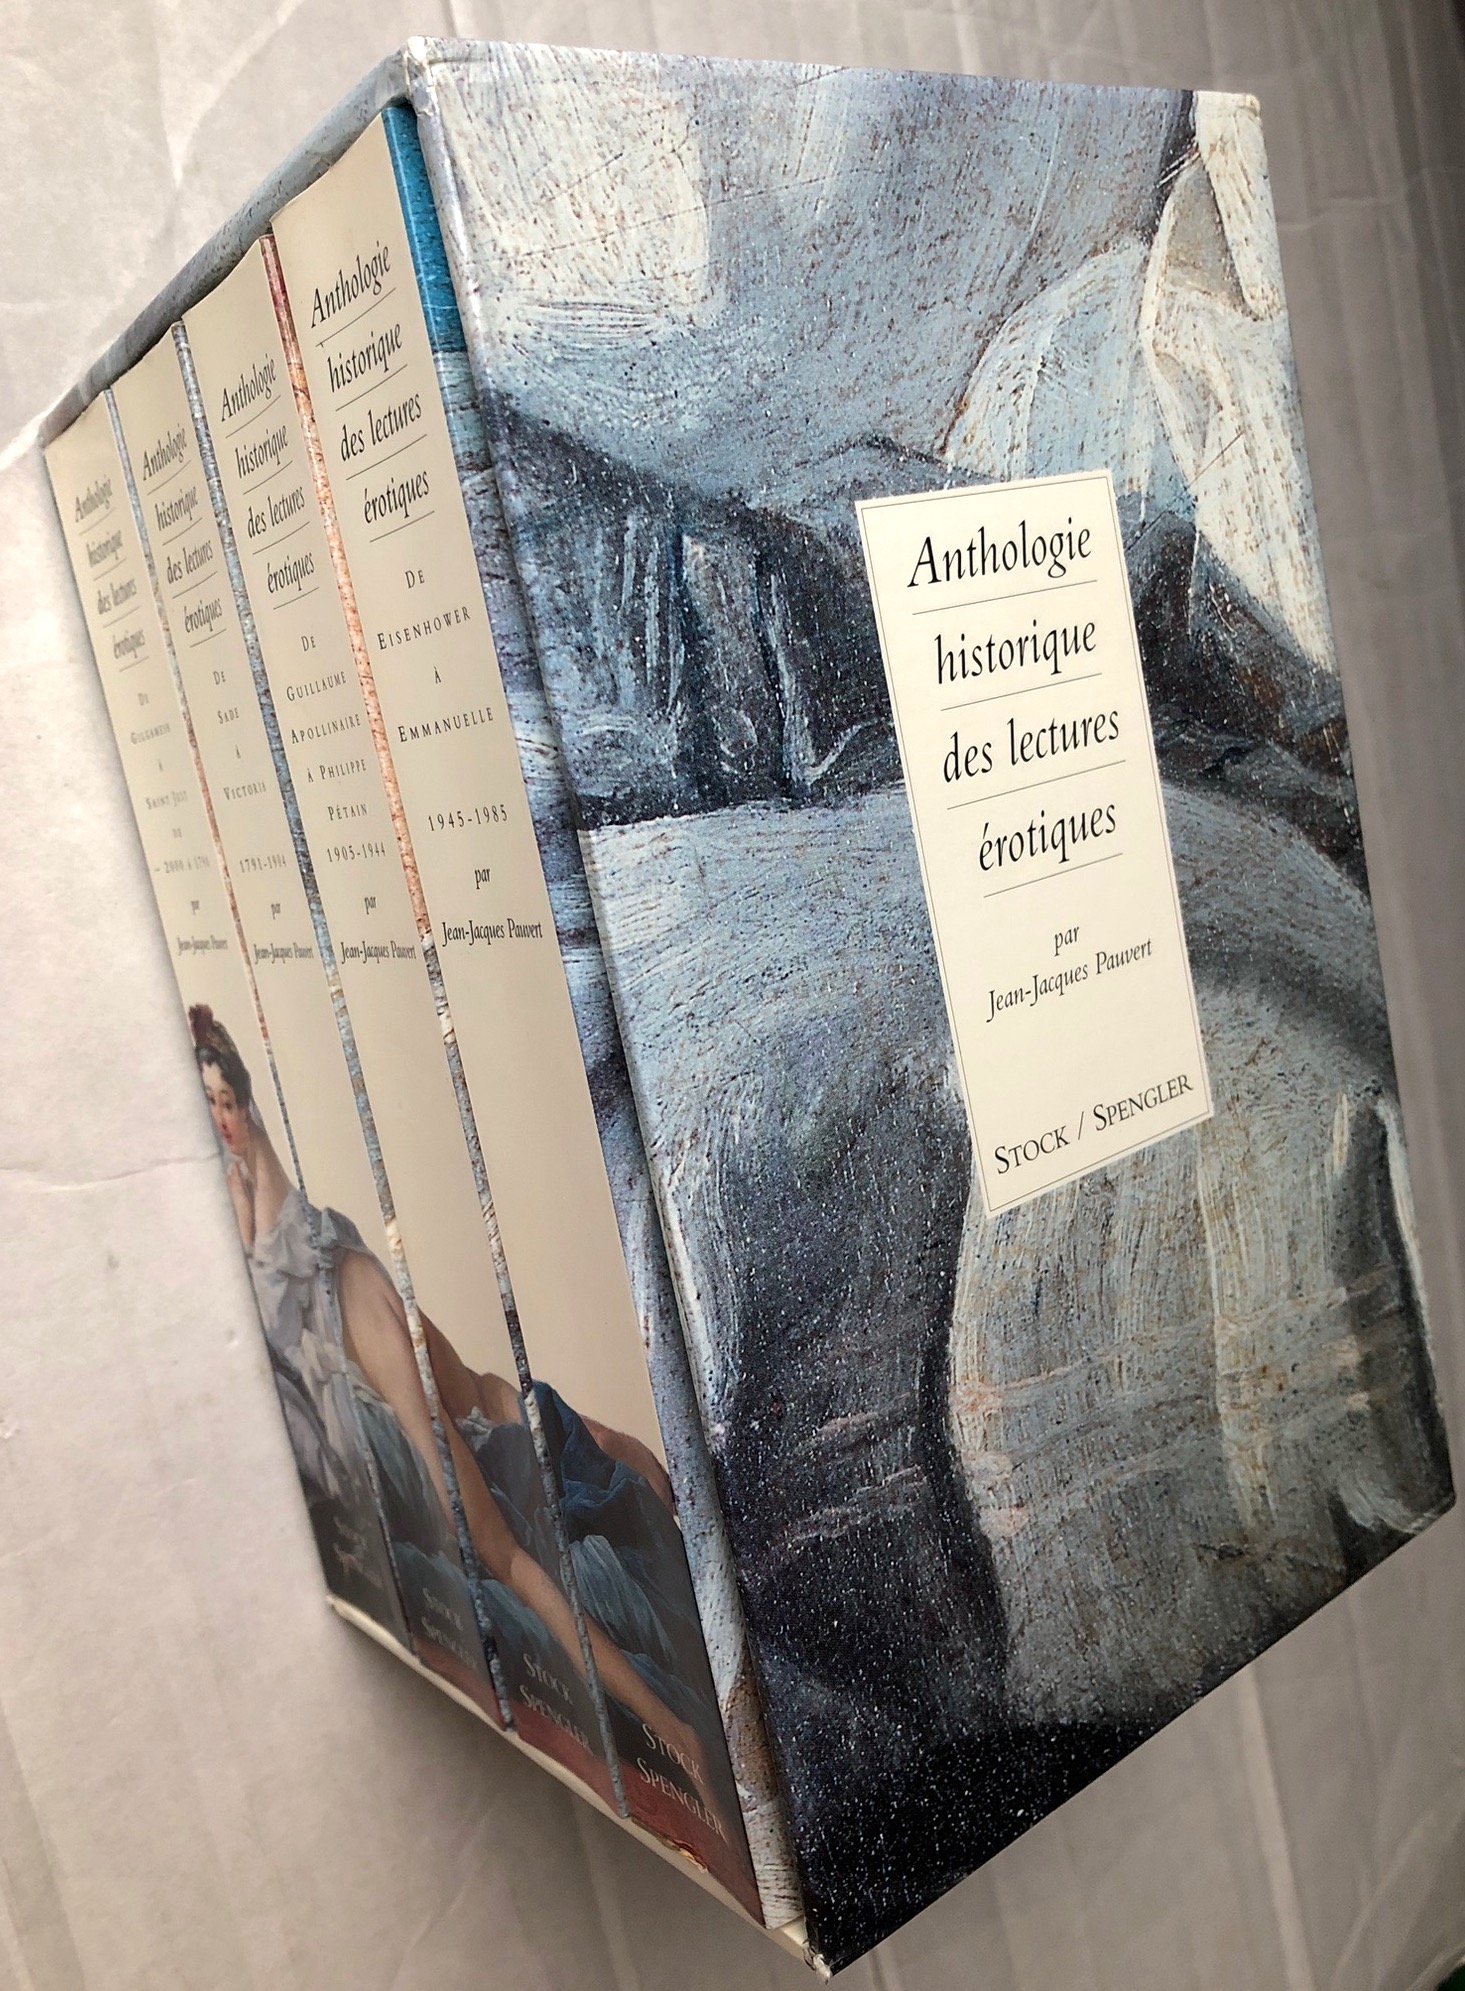 Anthologie historique des lectures érotiques Coffret 4 volumes - Pauvert Jean-Jacques